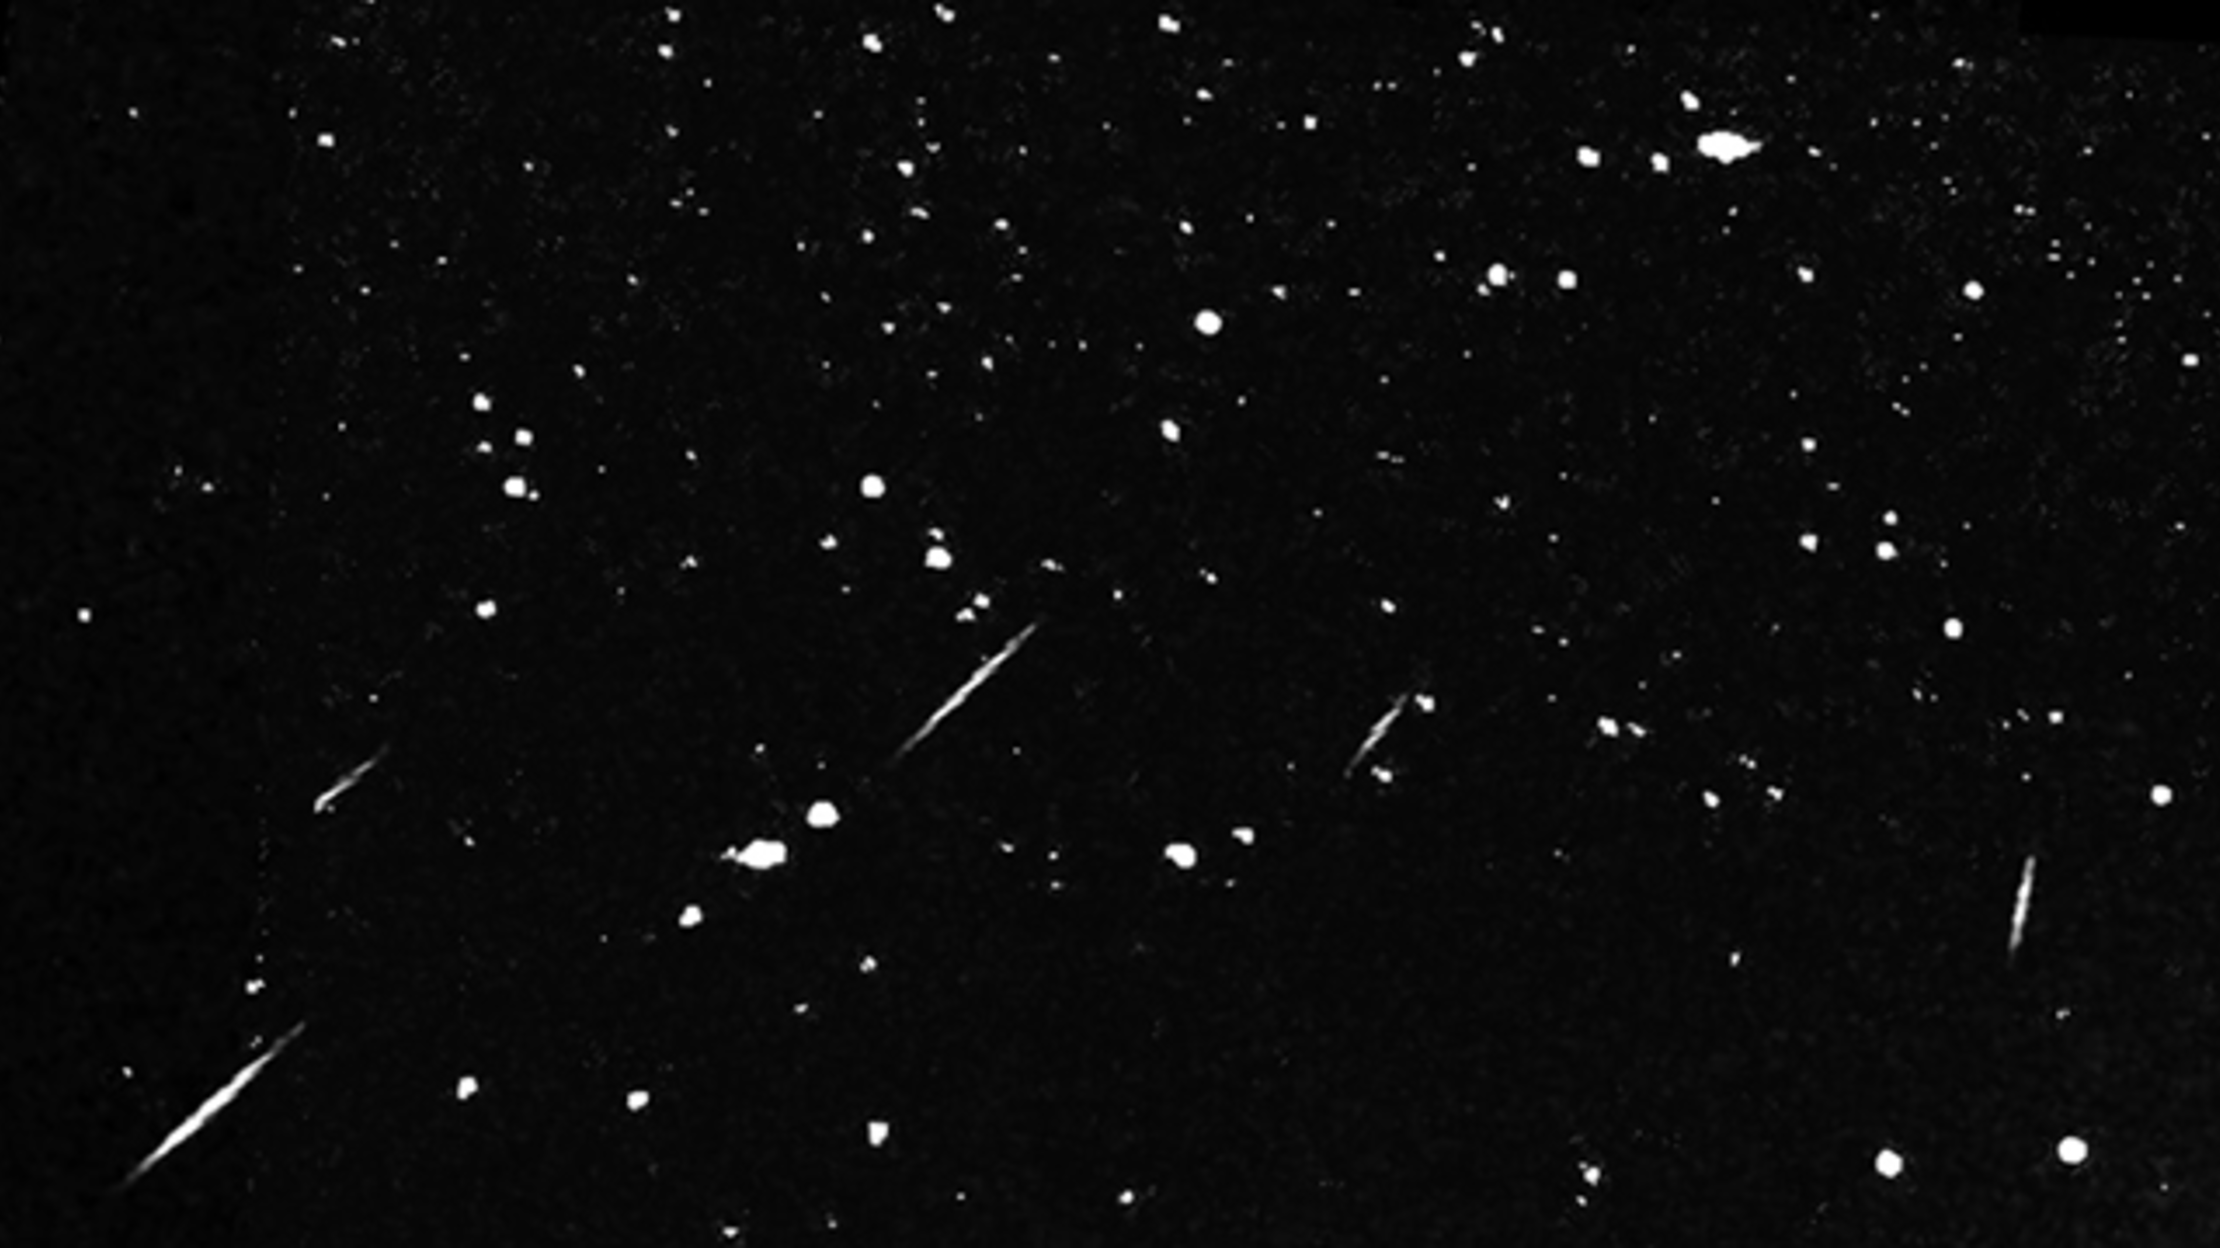 Draconid meteor shower is this weekend | WLOS